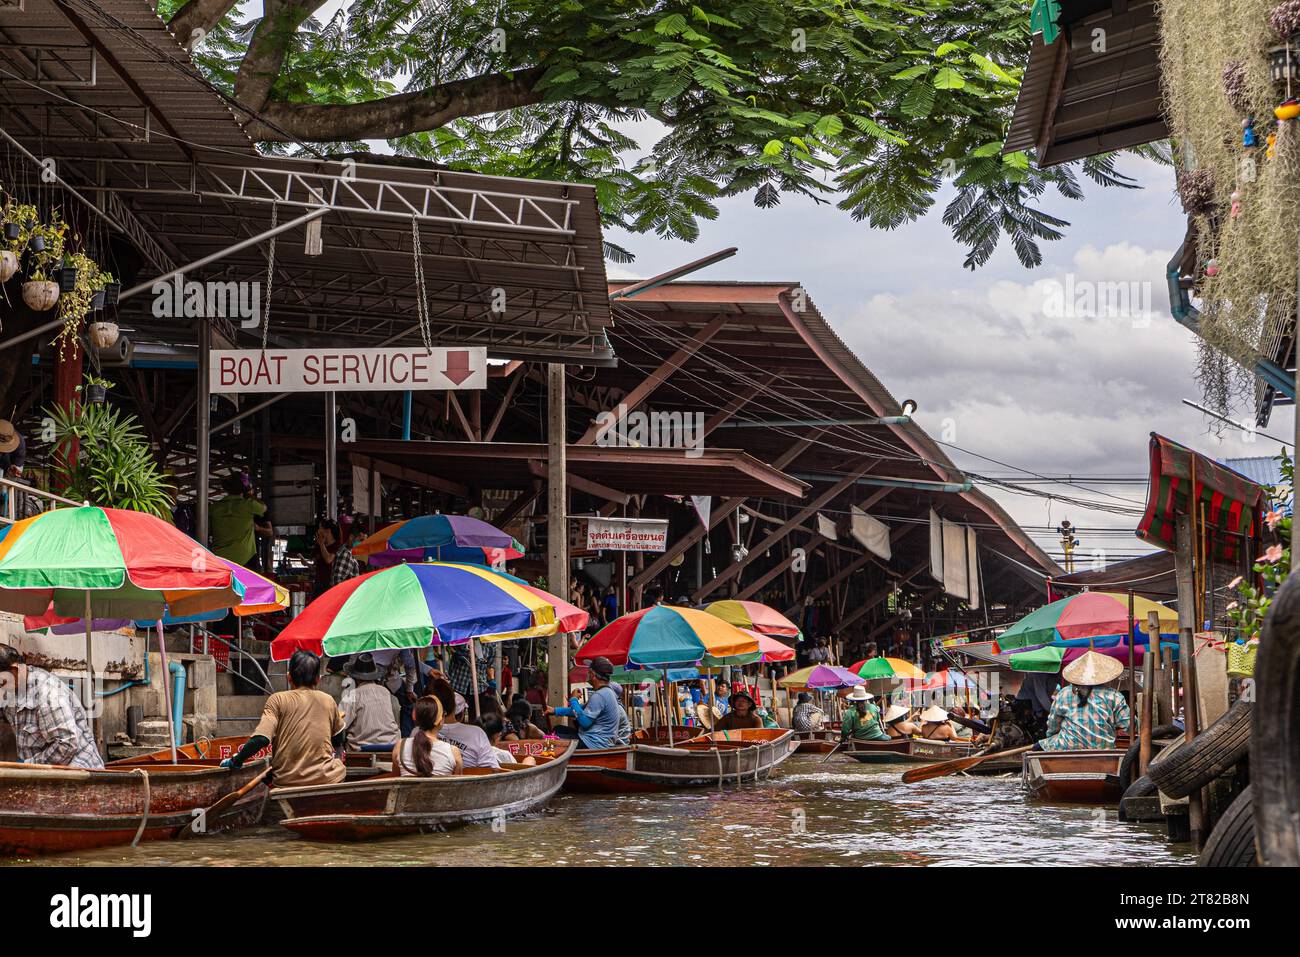 Mercato galleggiante, barca, mercato, mercato delle barche, commerciante, commercio, souvenir, turismo, attrazione, vacanza, viaggio, fiume, colorato, gita di un giorno a Bangkok Foto Stock